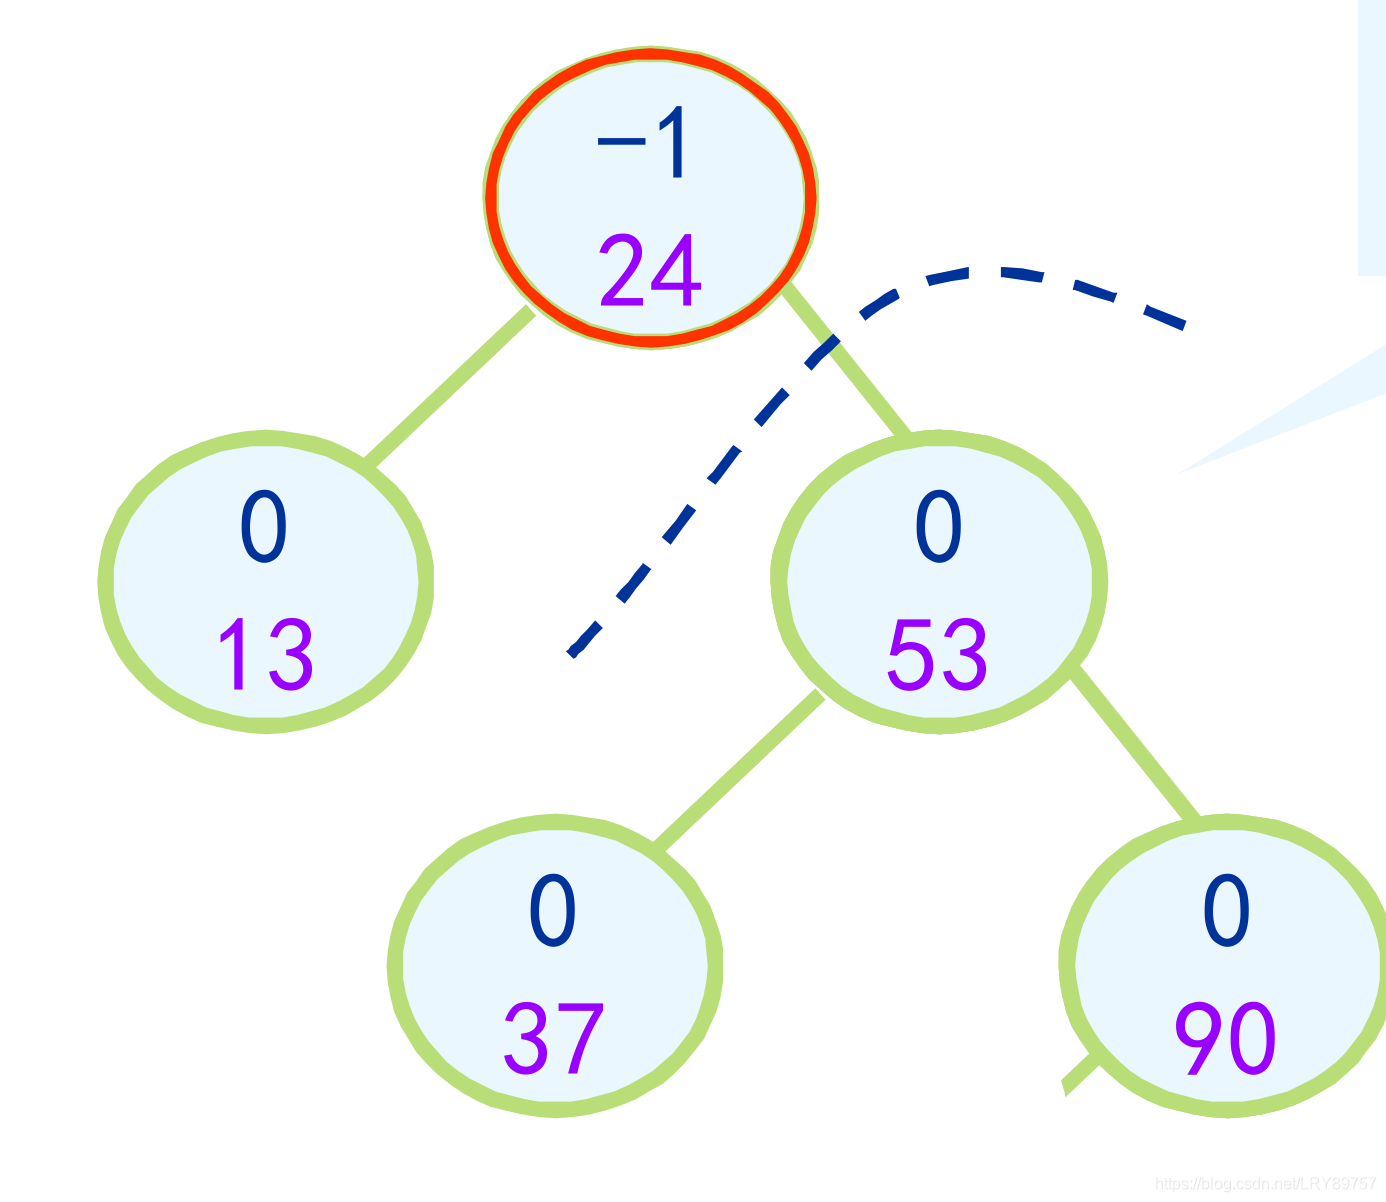 平衡二叉排序树最终构造